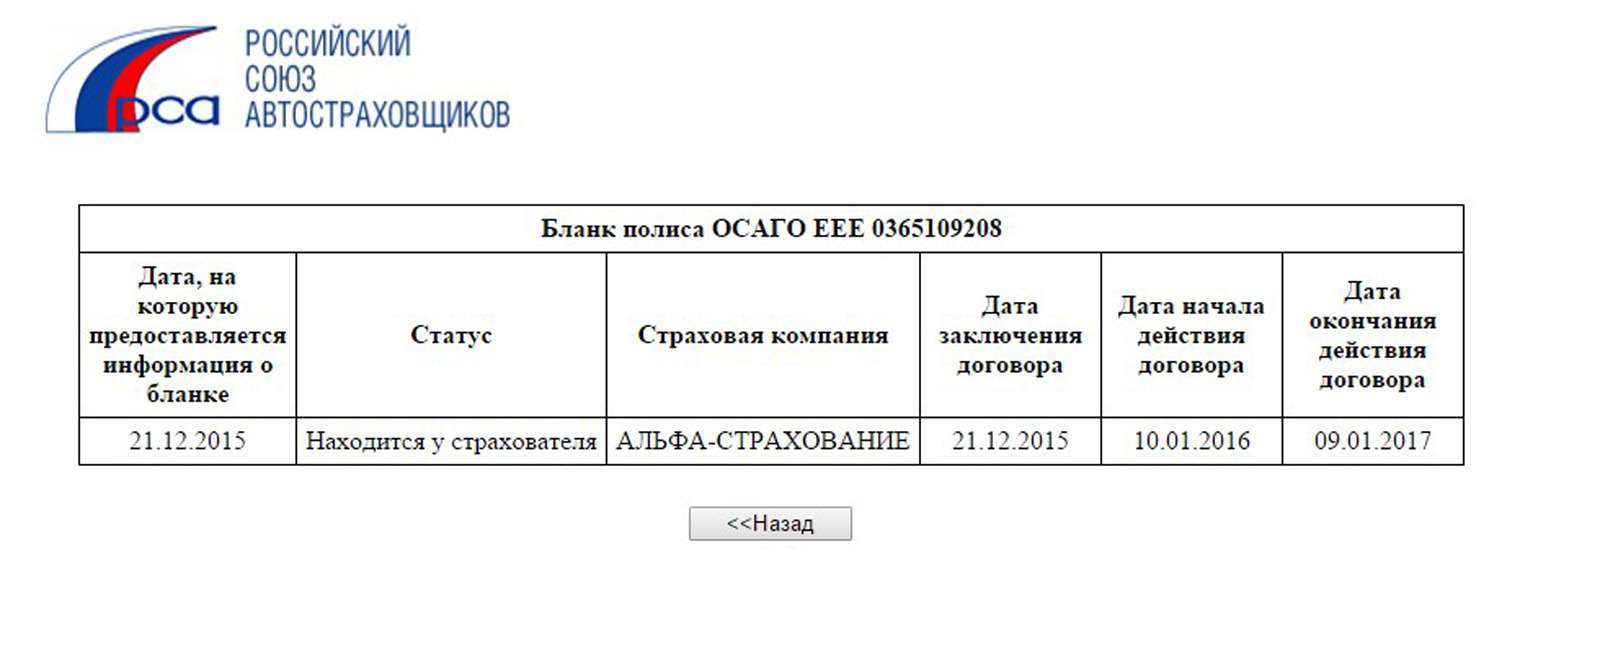 Проверить подлинность полиса можно на сайте РСА. В нашем случае настоящий полис находится у страхователя в Челябинске.